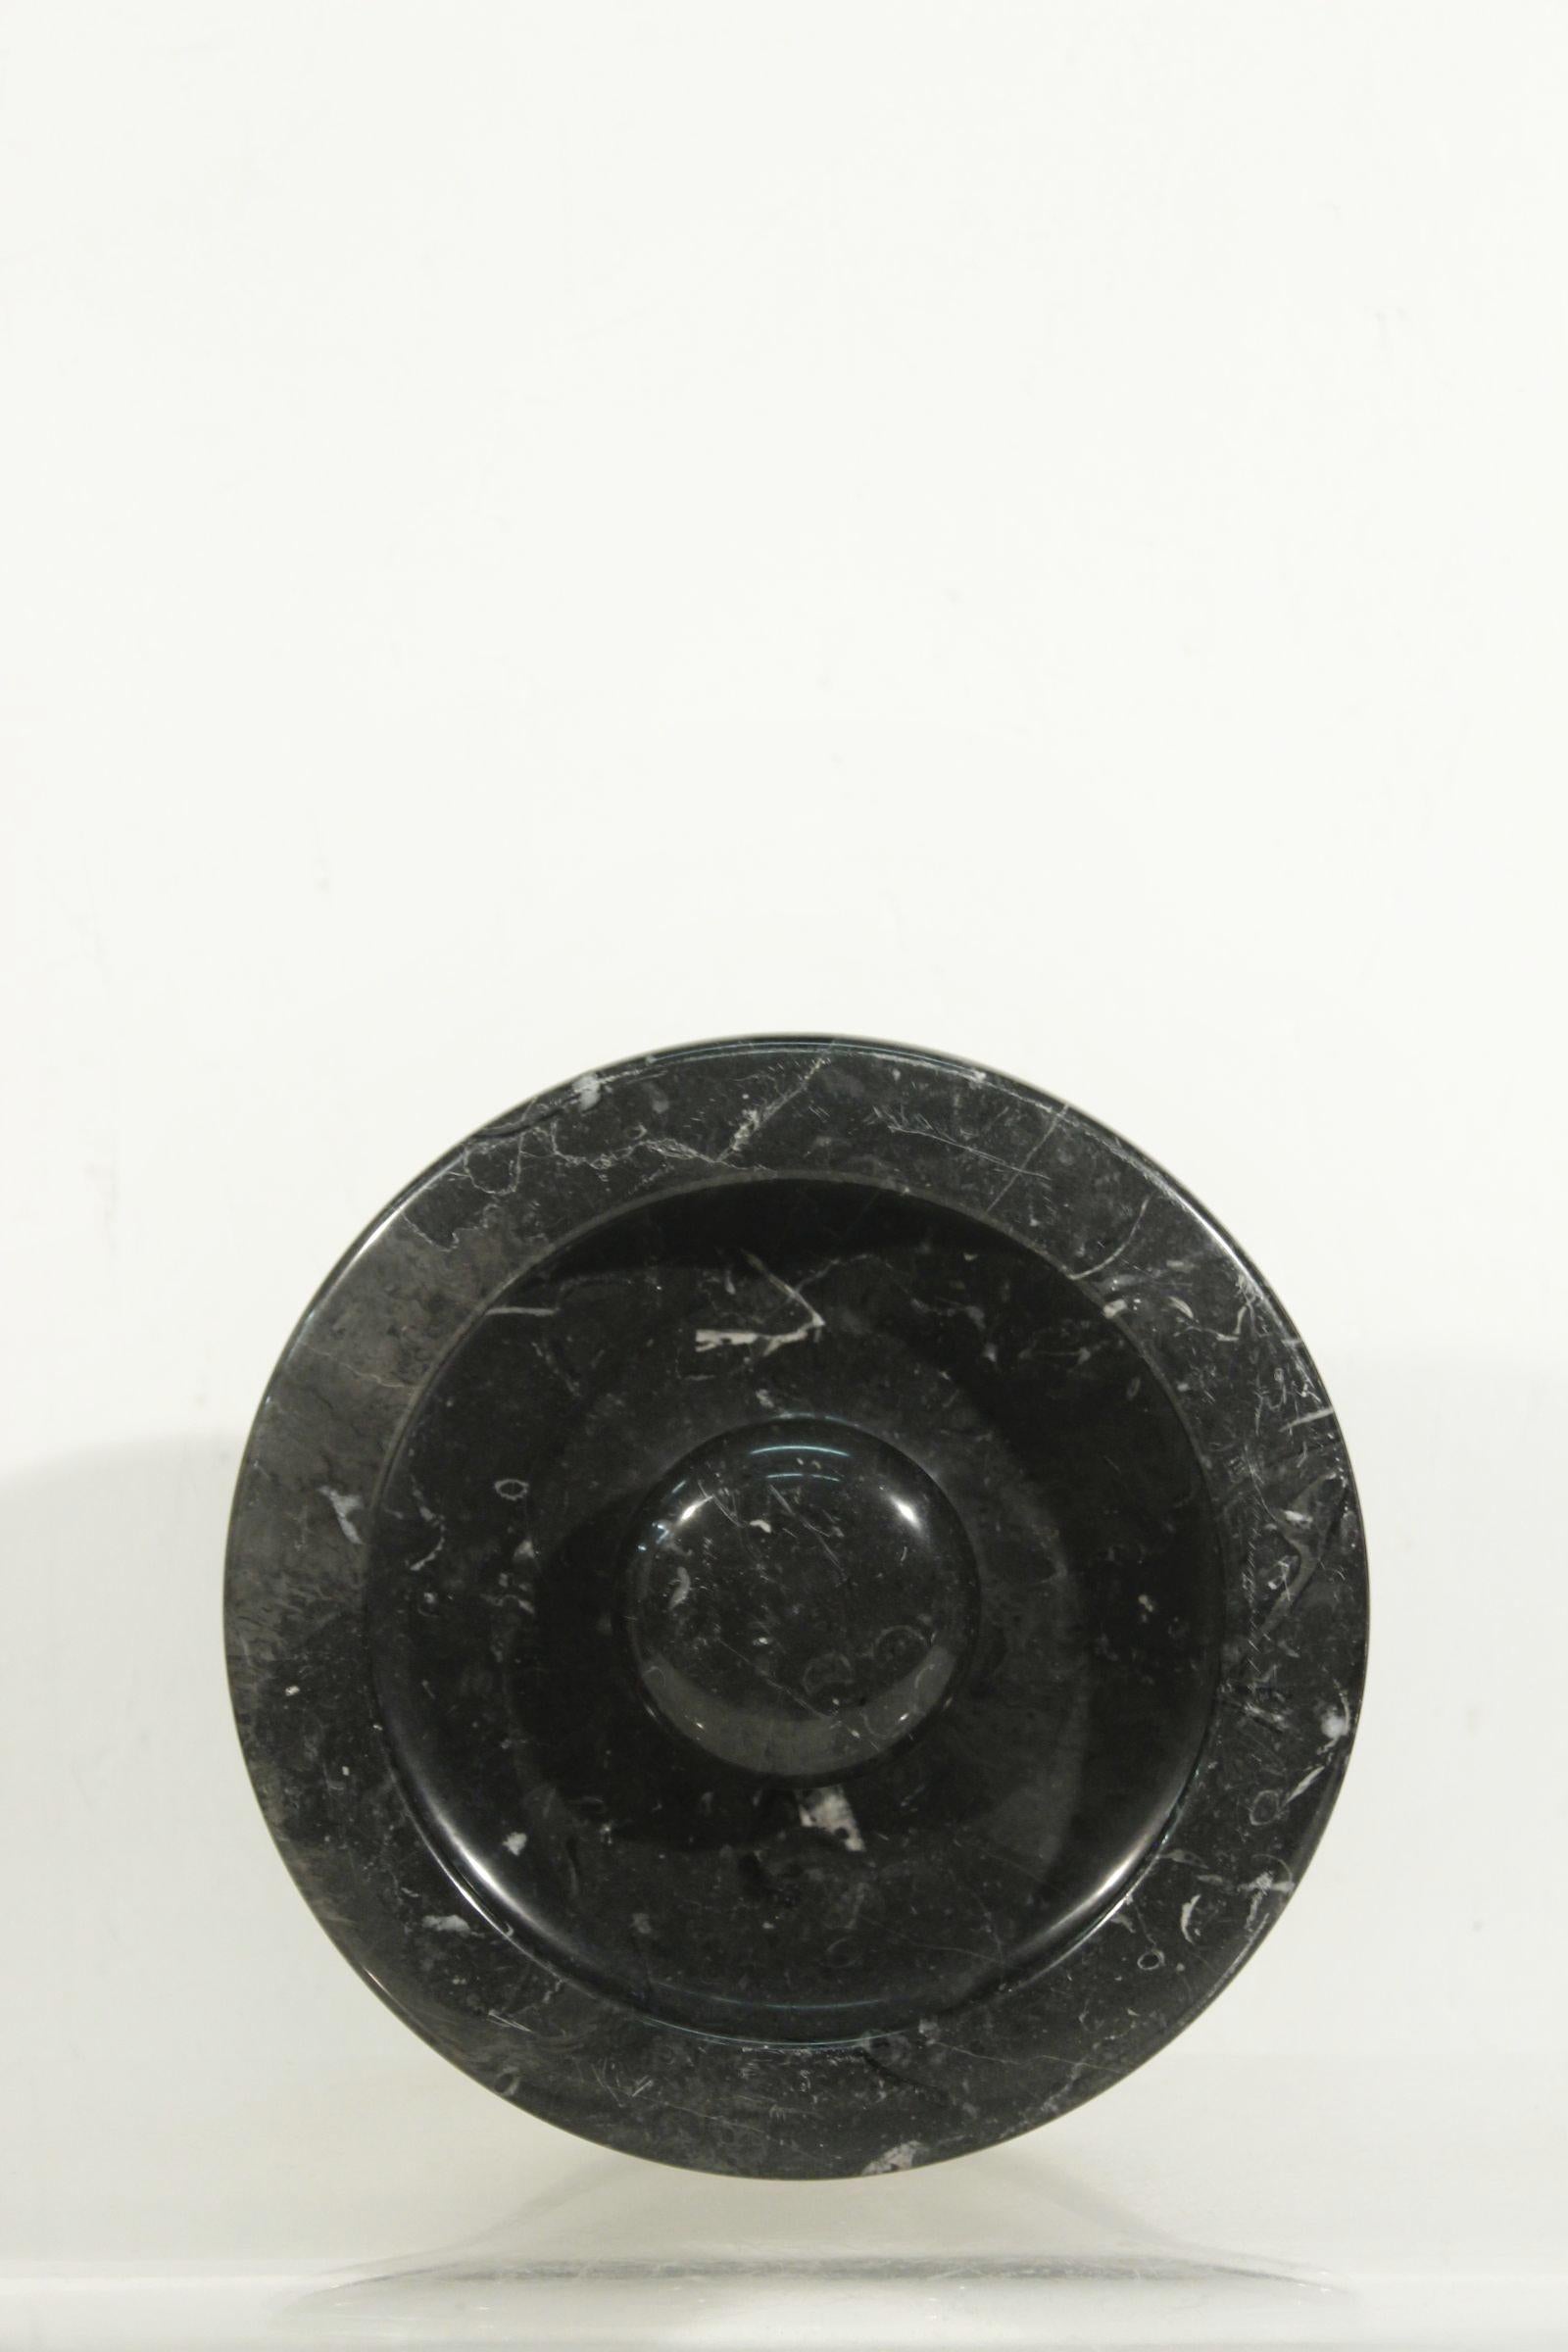 Schöner und schwerer (4,3 kg) Aschenbecher aus schwarzem Marmor, entworfen von Angelo Mangiarotti im Jahr 1967, hergestellt von Knoll International. 

In tollem Vintage-Zustand, der kaum Gebrauchsspuren aufweist. 

